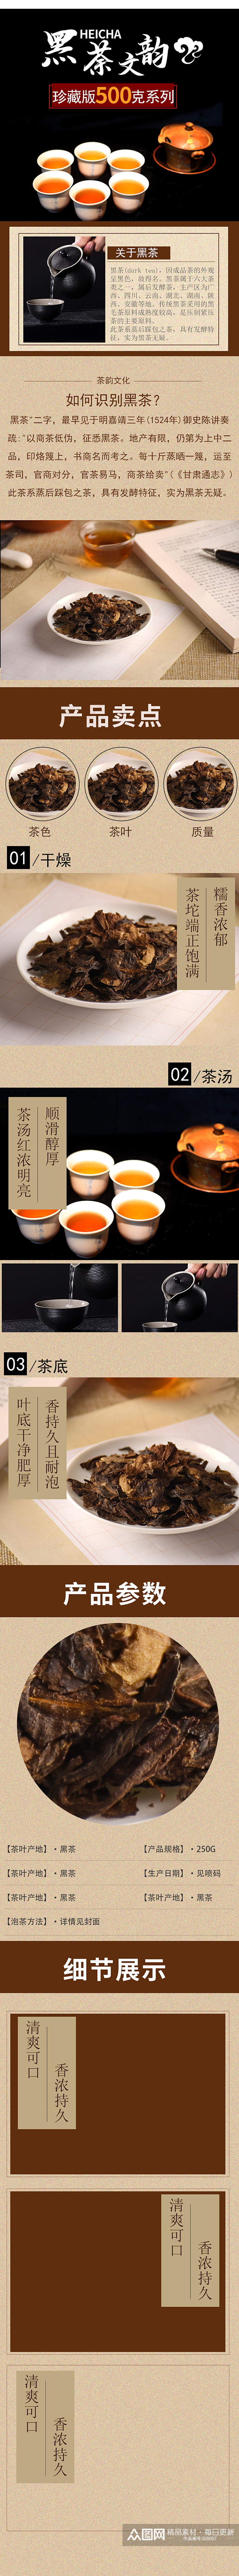 黑茶详情页黑色茶文化详情页模板素材